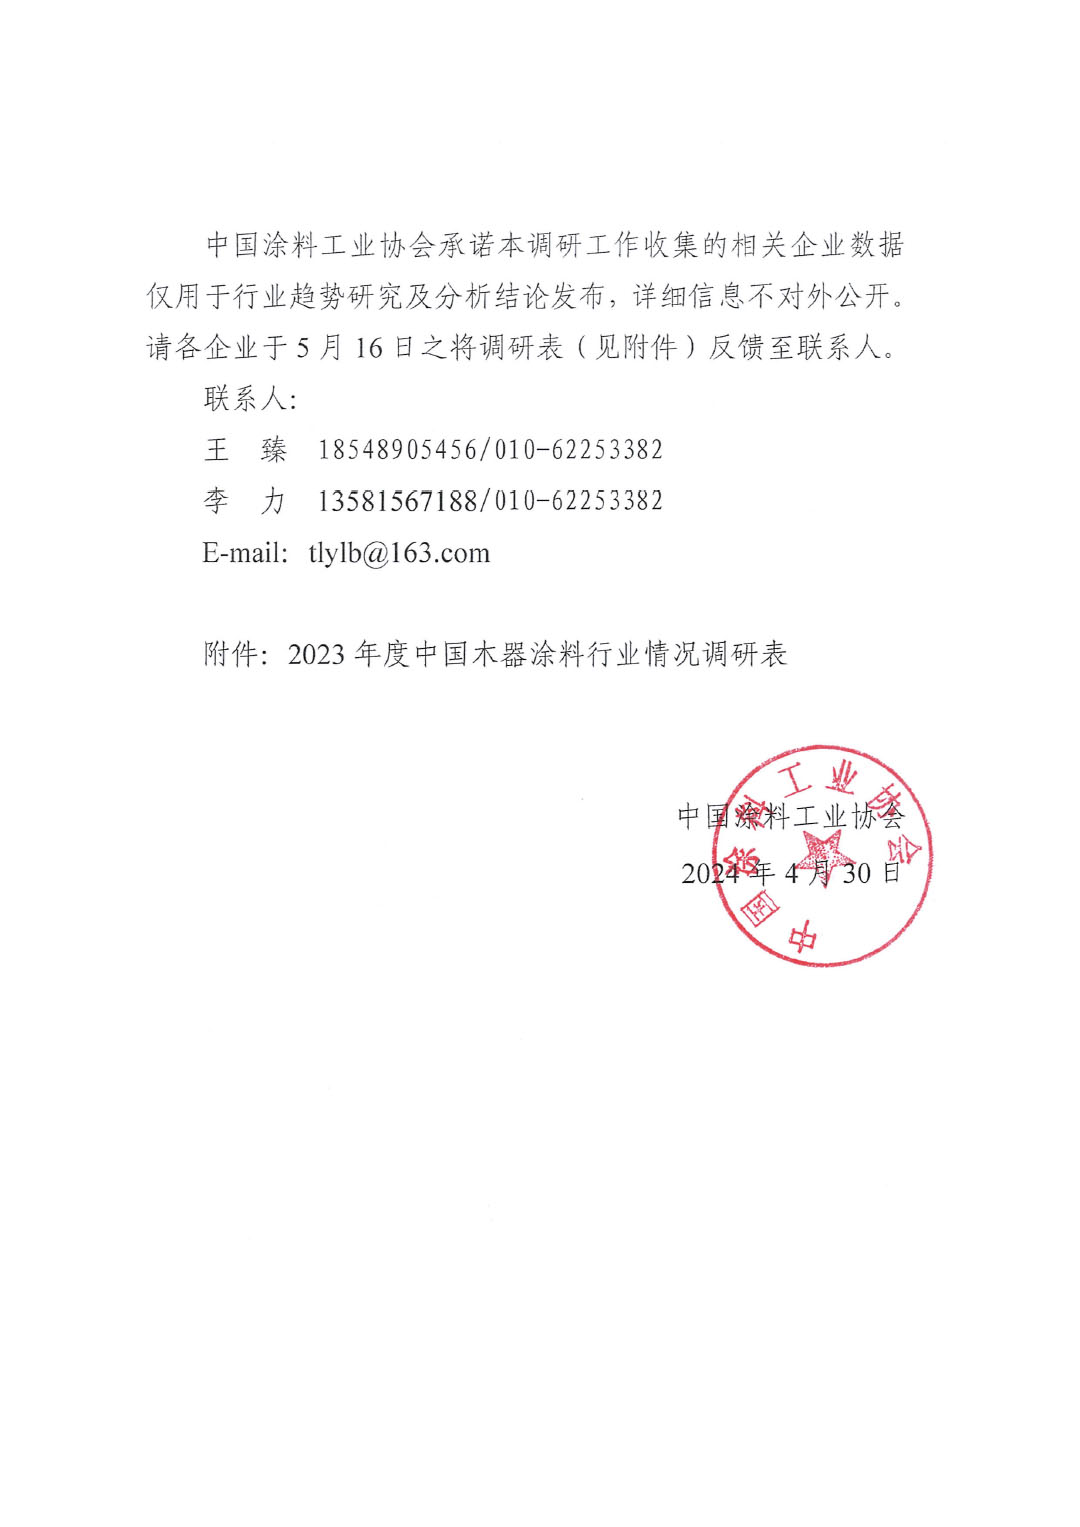 关于开展2023年度中国木器涂料行业情况的通知-2